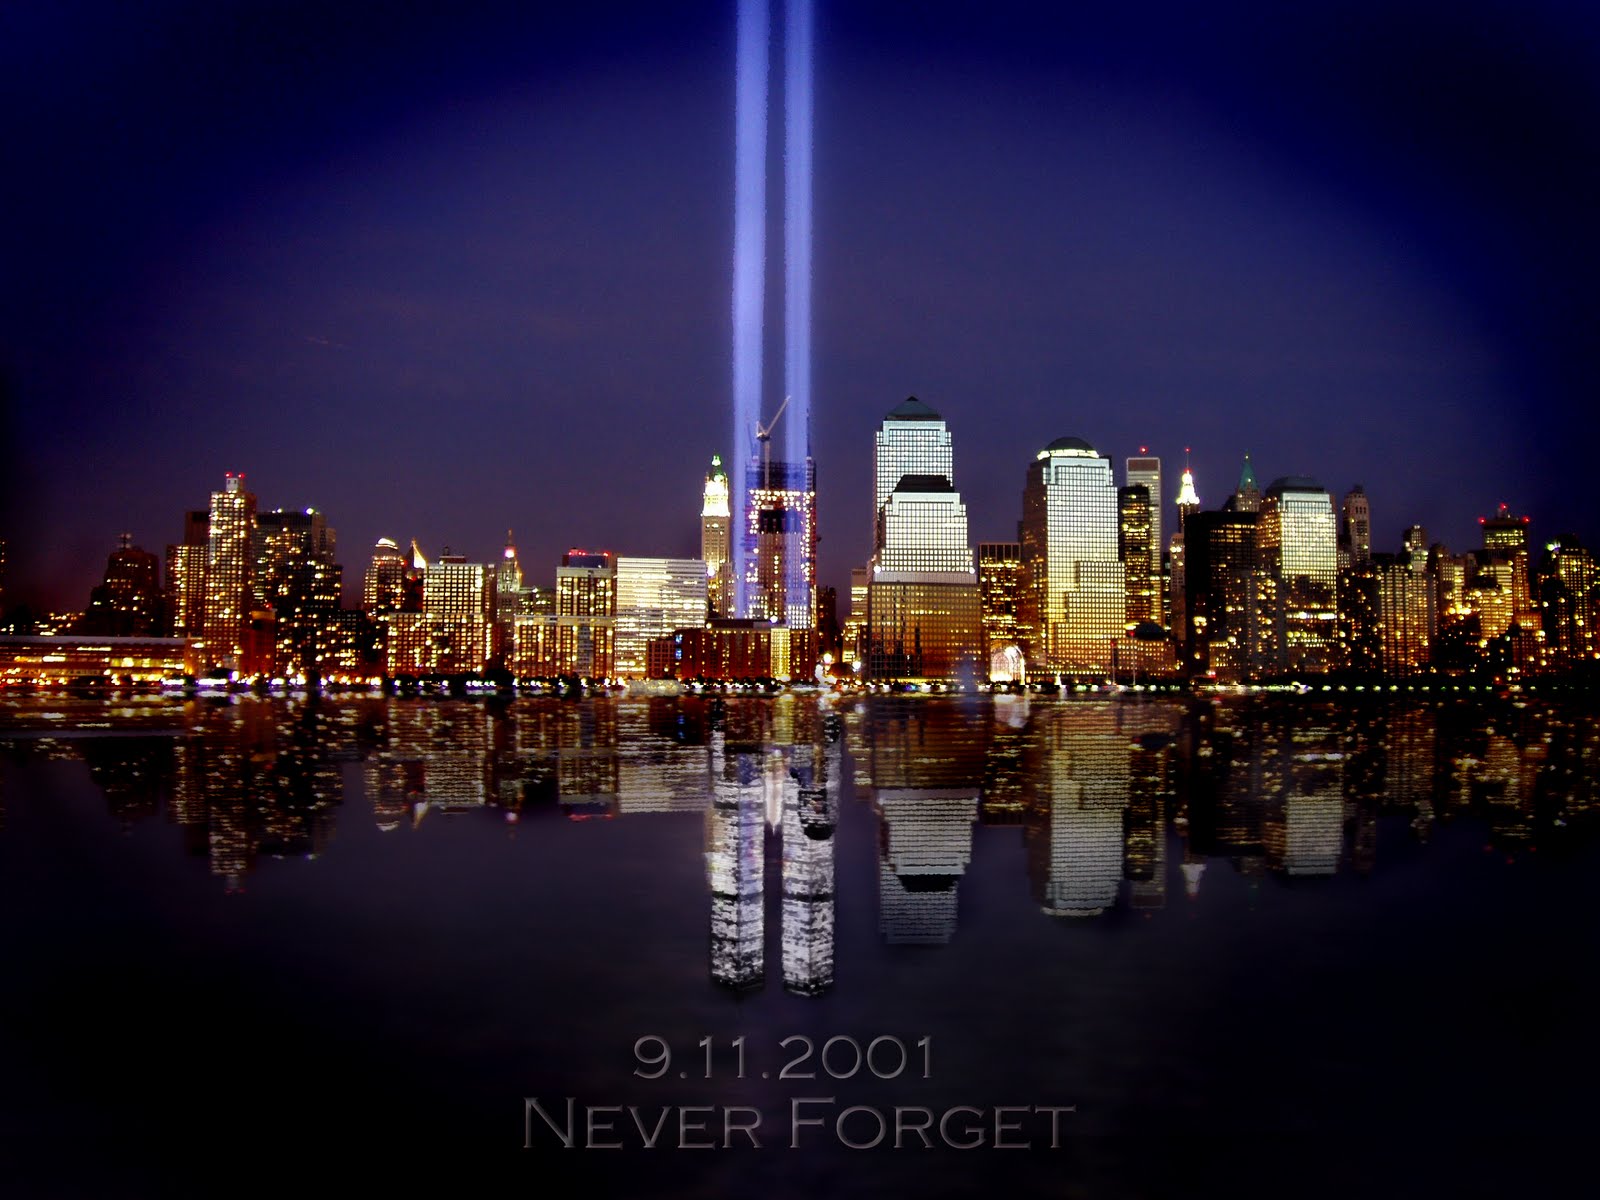 9 11 fond d'écran,ville,paysage urbain,zone métropolitaine,horizon,réflexion